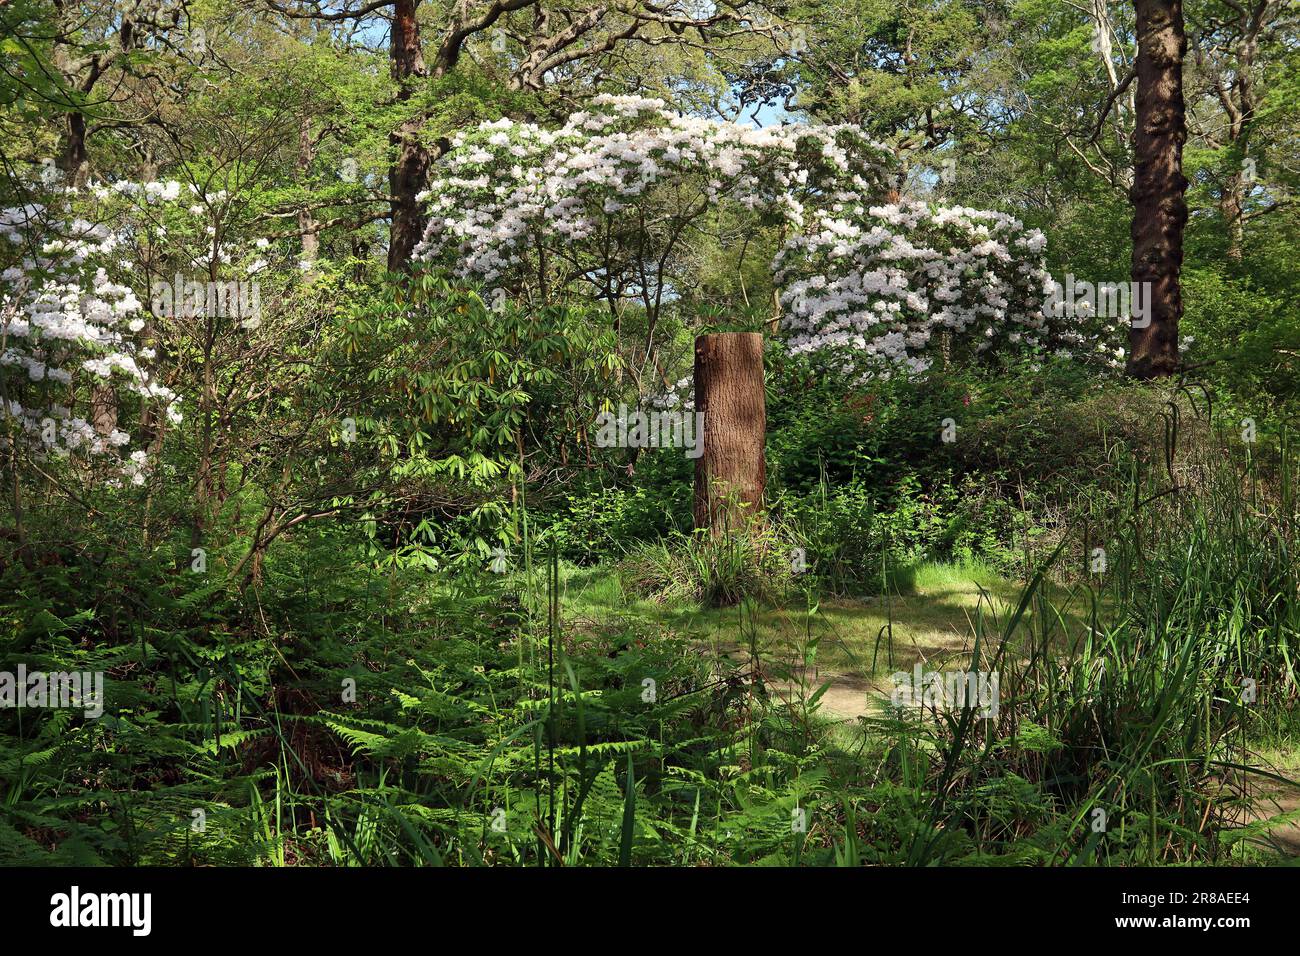 Un alto ceppo di alberi si annida sotto un rododendro bianco e alberi alti in un giardino boschivo inglese che mescola piante autoctone del regno unito con specie esotiche. Maggio Foto Stock